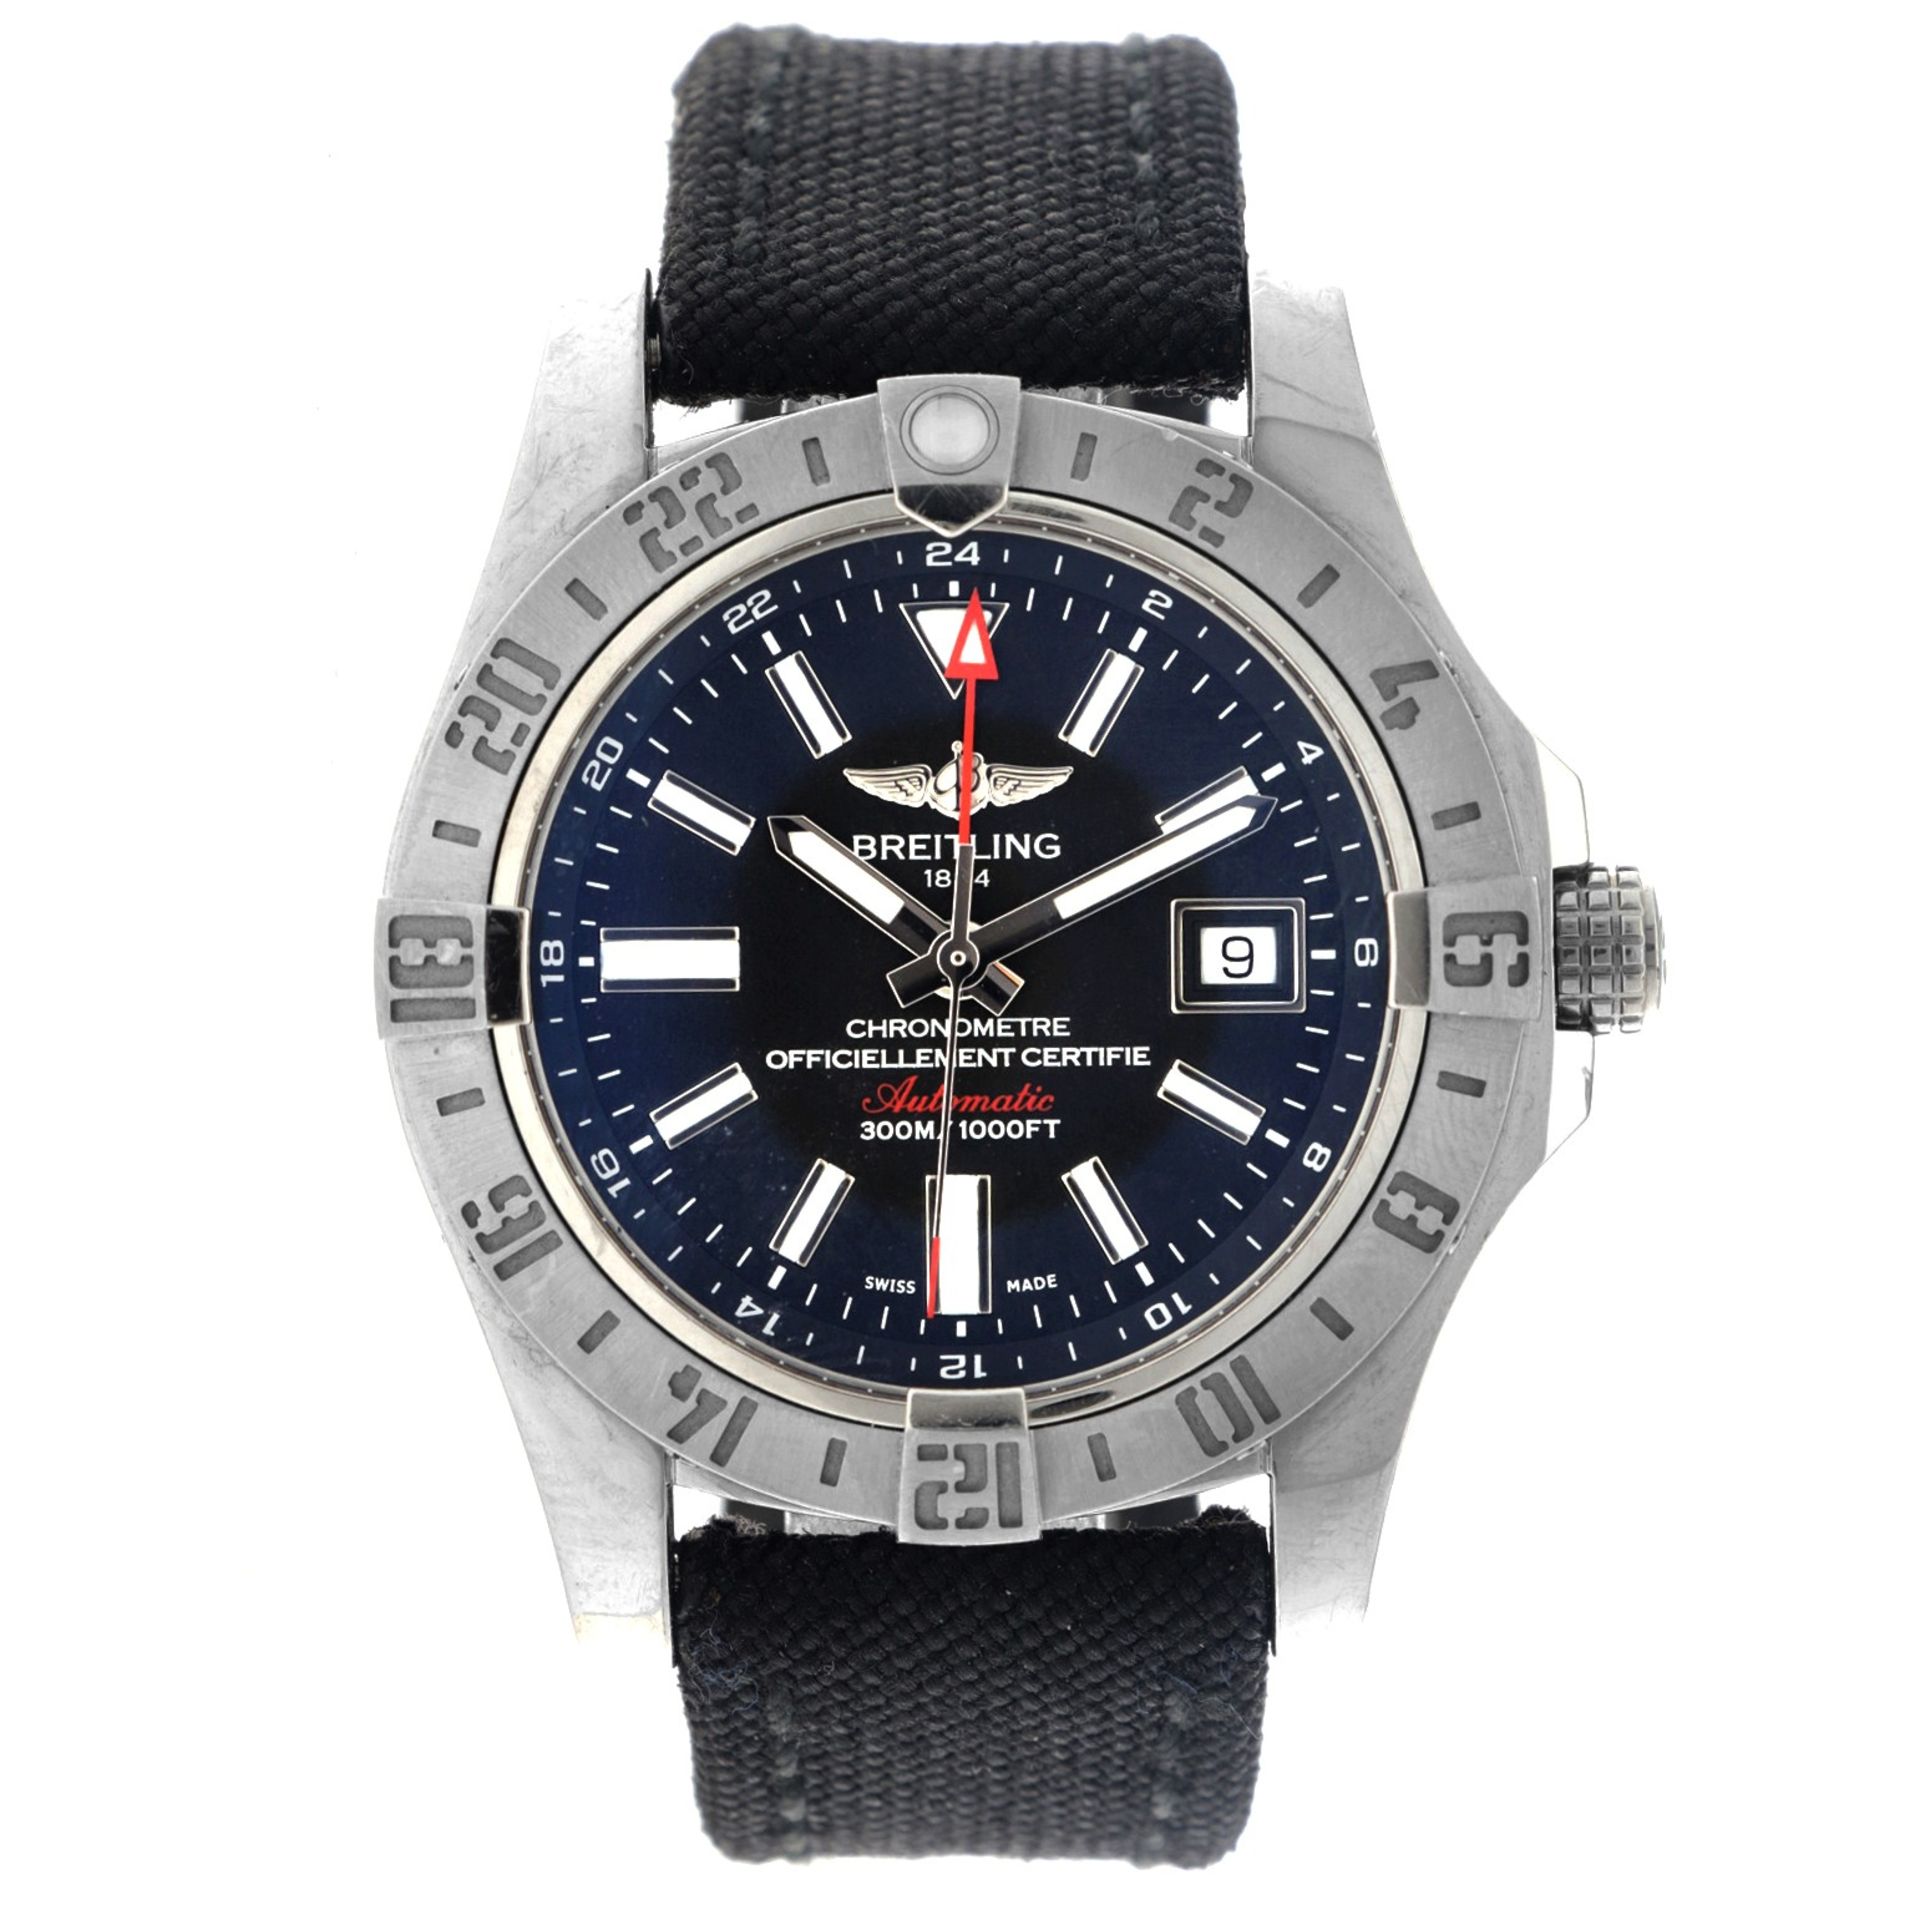 Breitling Avenger II GMT A32390 - Men's watch - 2014.